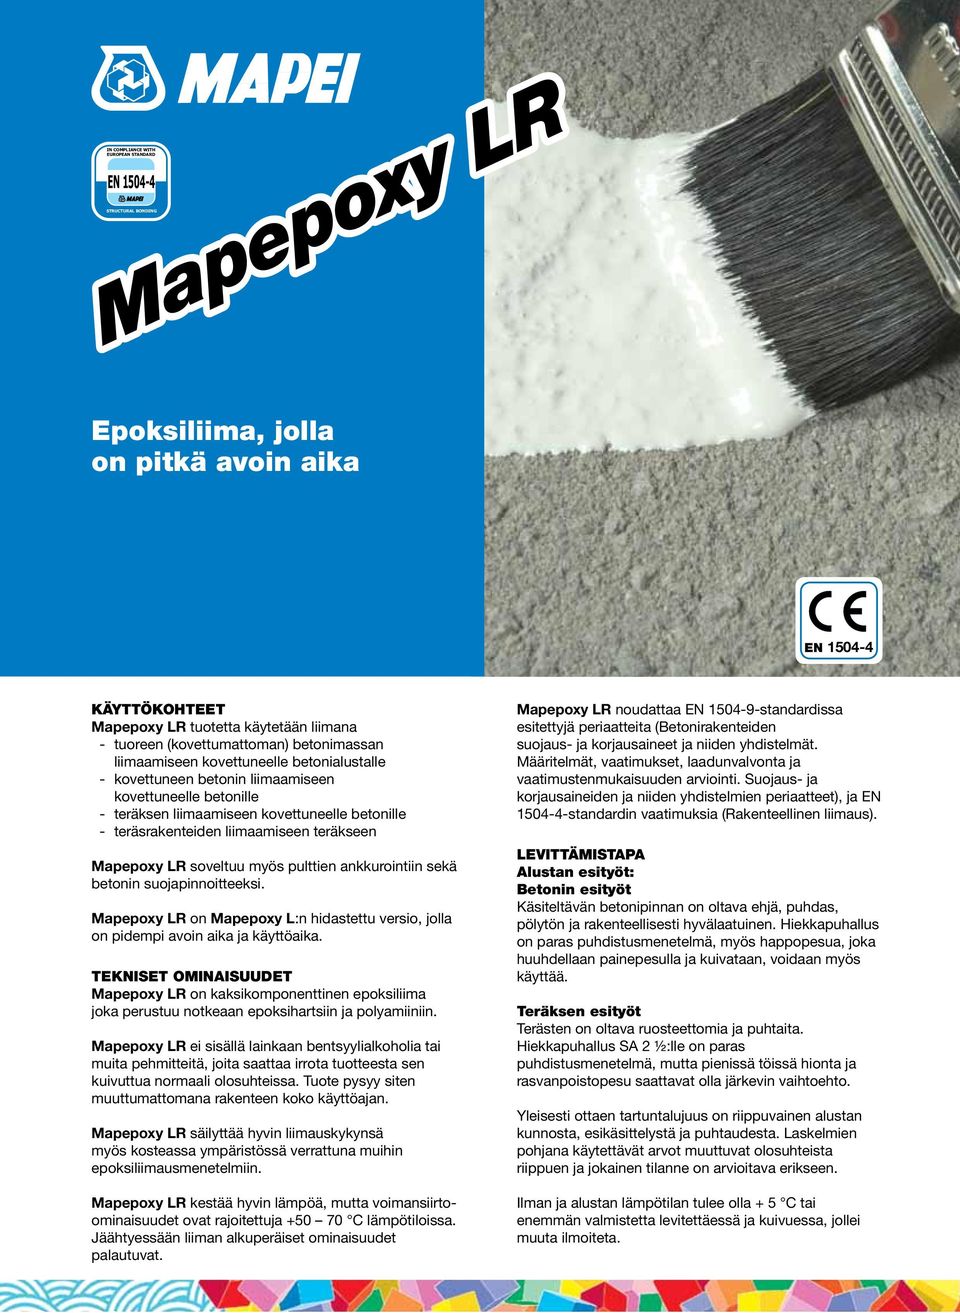 liimaamiseen teräkseen Mapepoxy LR soveltuu myös pulttien ankkurointiin sekä betonin suojapinnoitteeksi. Mapepoxy LR on Mapepoxy L:n hidastettu versio, jolla on pidempi avoin aika ja käyttöaika.